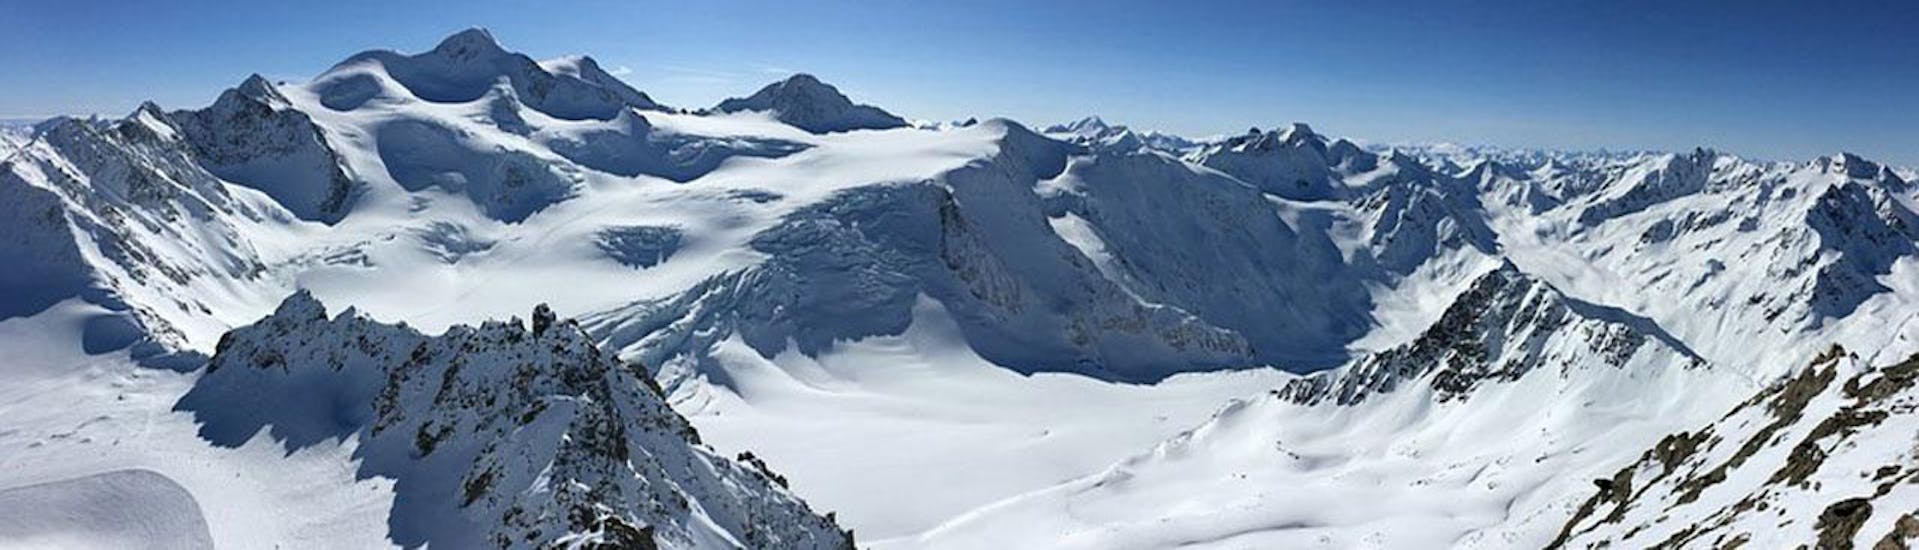 Ein Panoramablick über die schneebedeckten Berge des Skigebiets Arosa - Lenzerheide in den Schweizer Alpen, wo die ACT Sports Skischule Arosa private Skikurse für Kinder und Erwachsene anbietet.